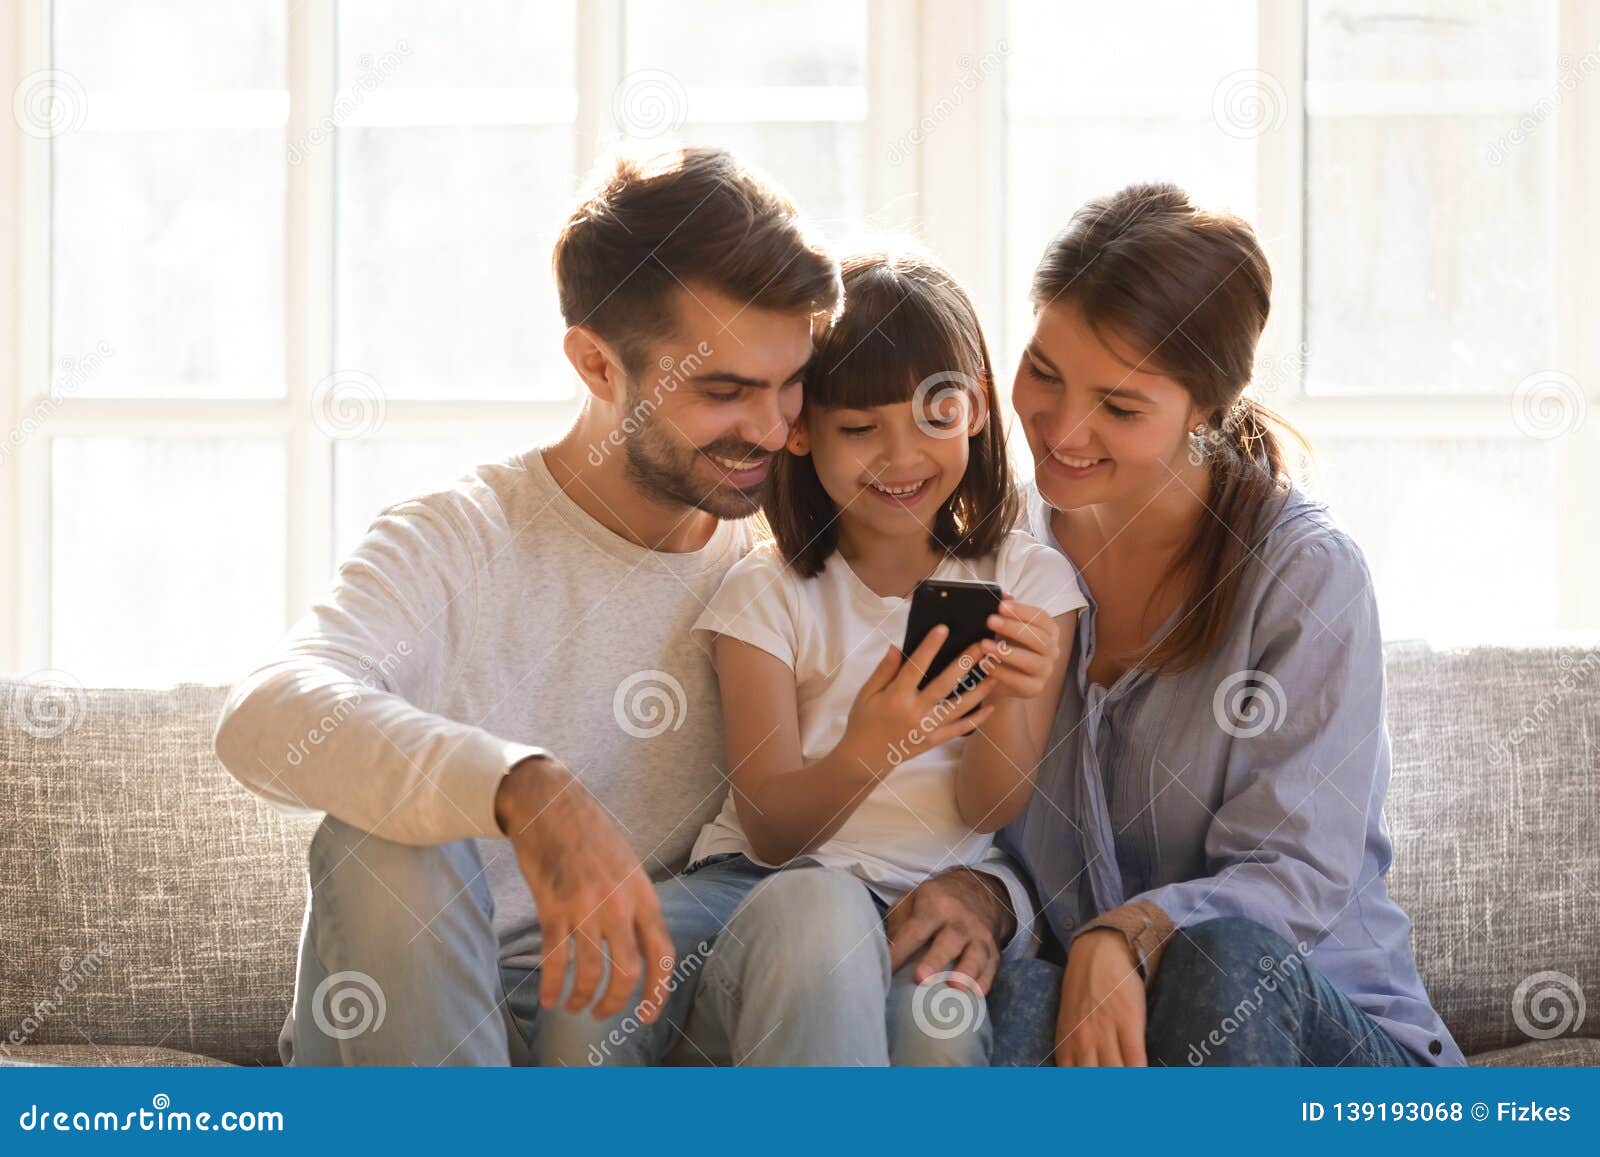 little kid daughter holding cellphone enjoy using mobile app